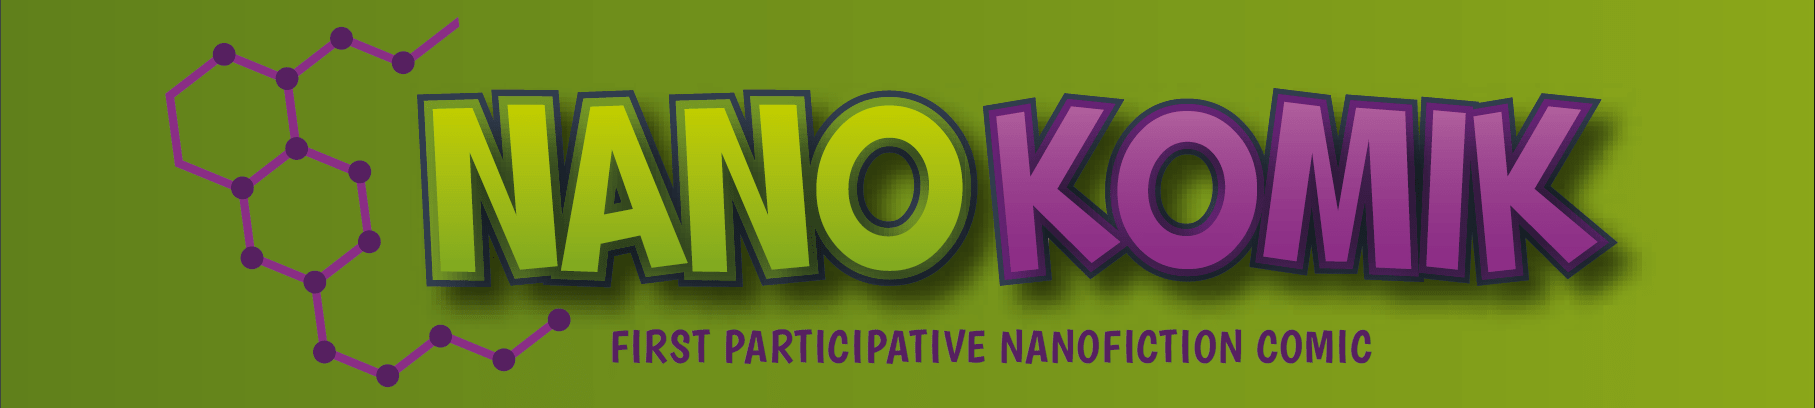 Nanokomik_Title